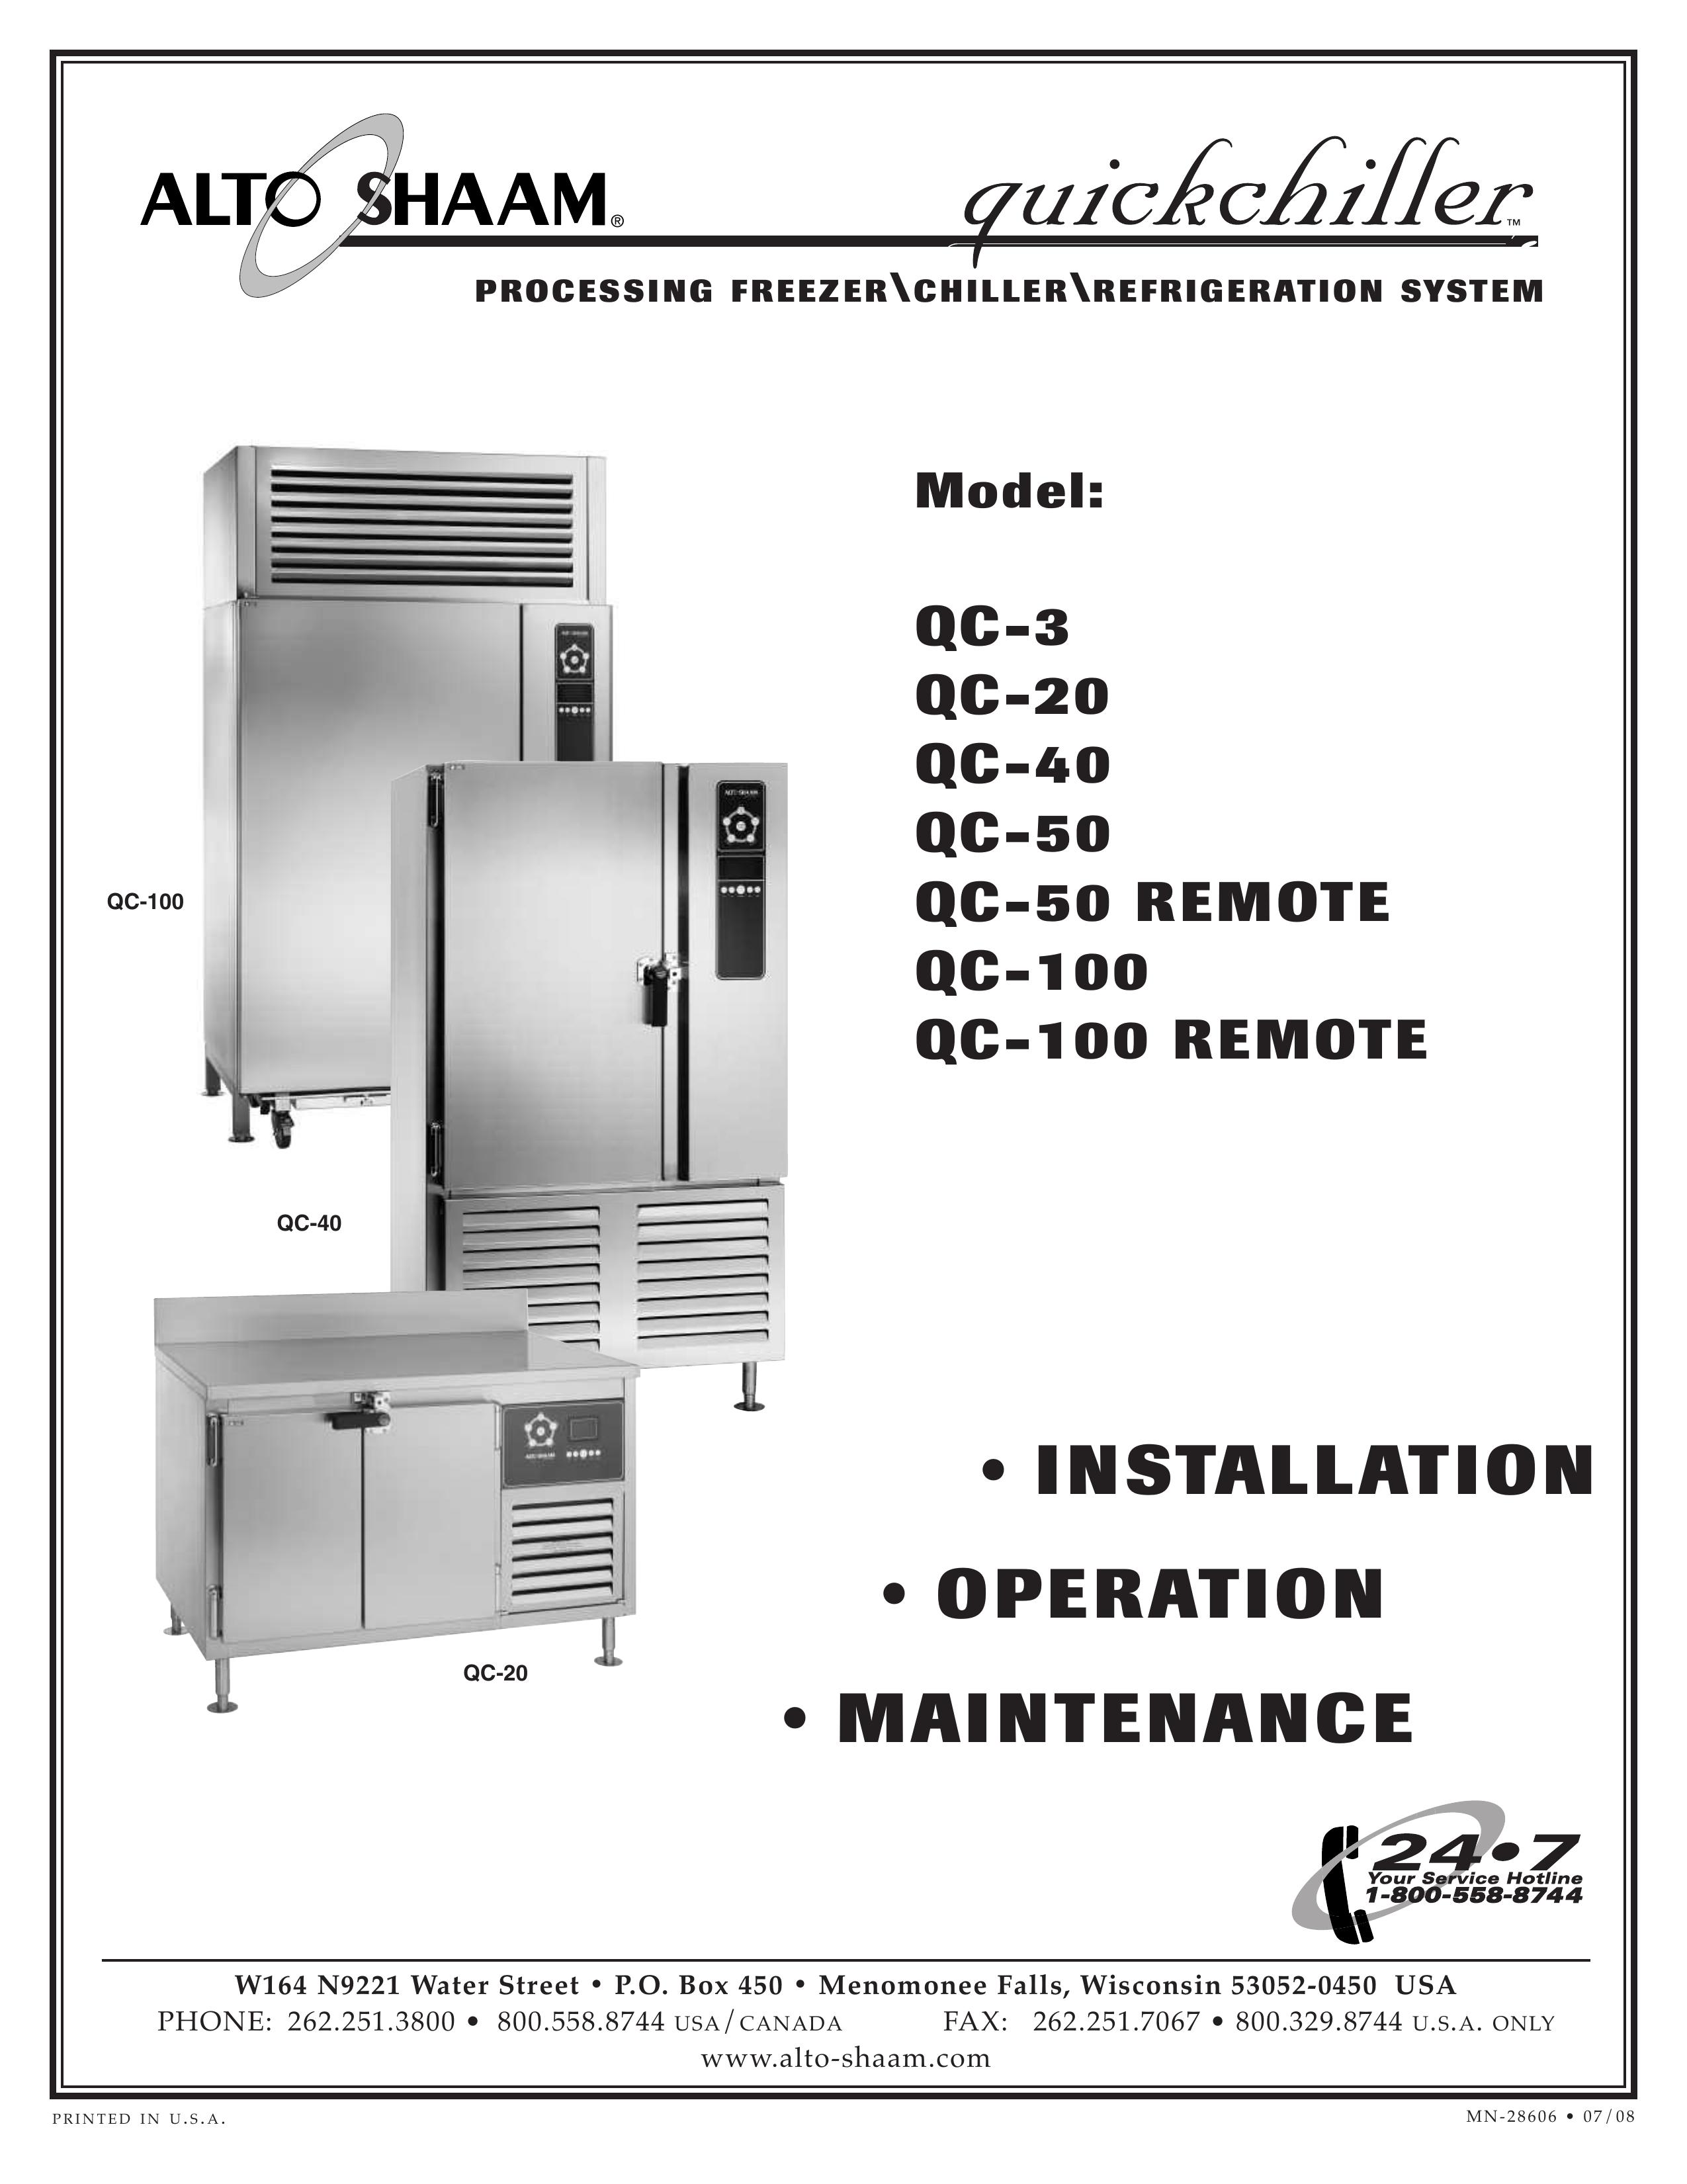 Alto-Shaam QC-100 REMOTE Refrigerator User Manual